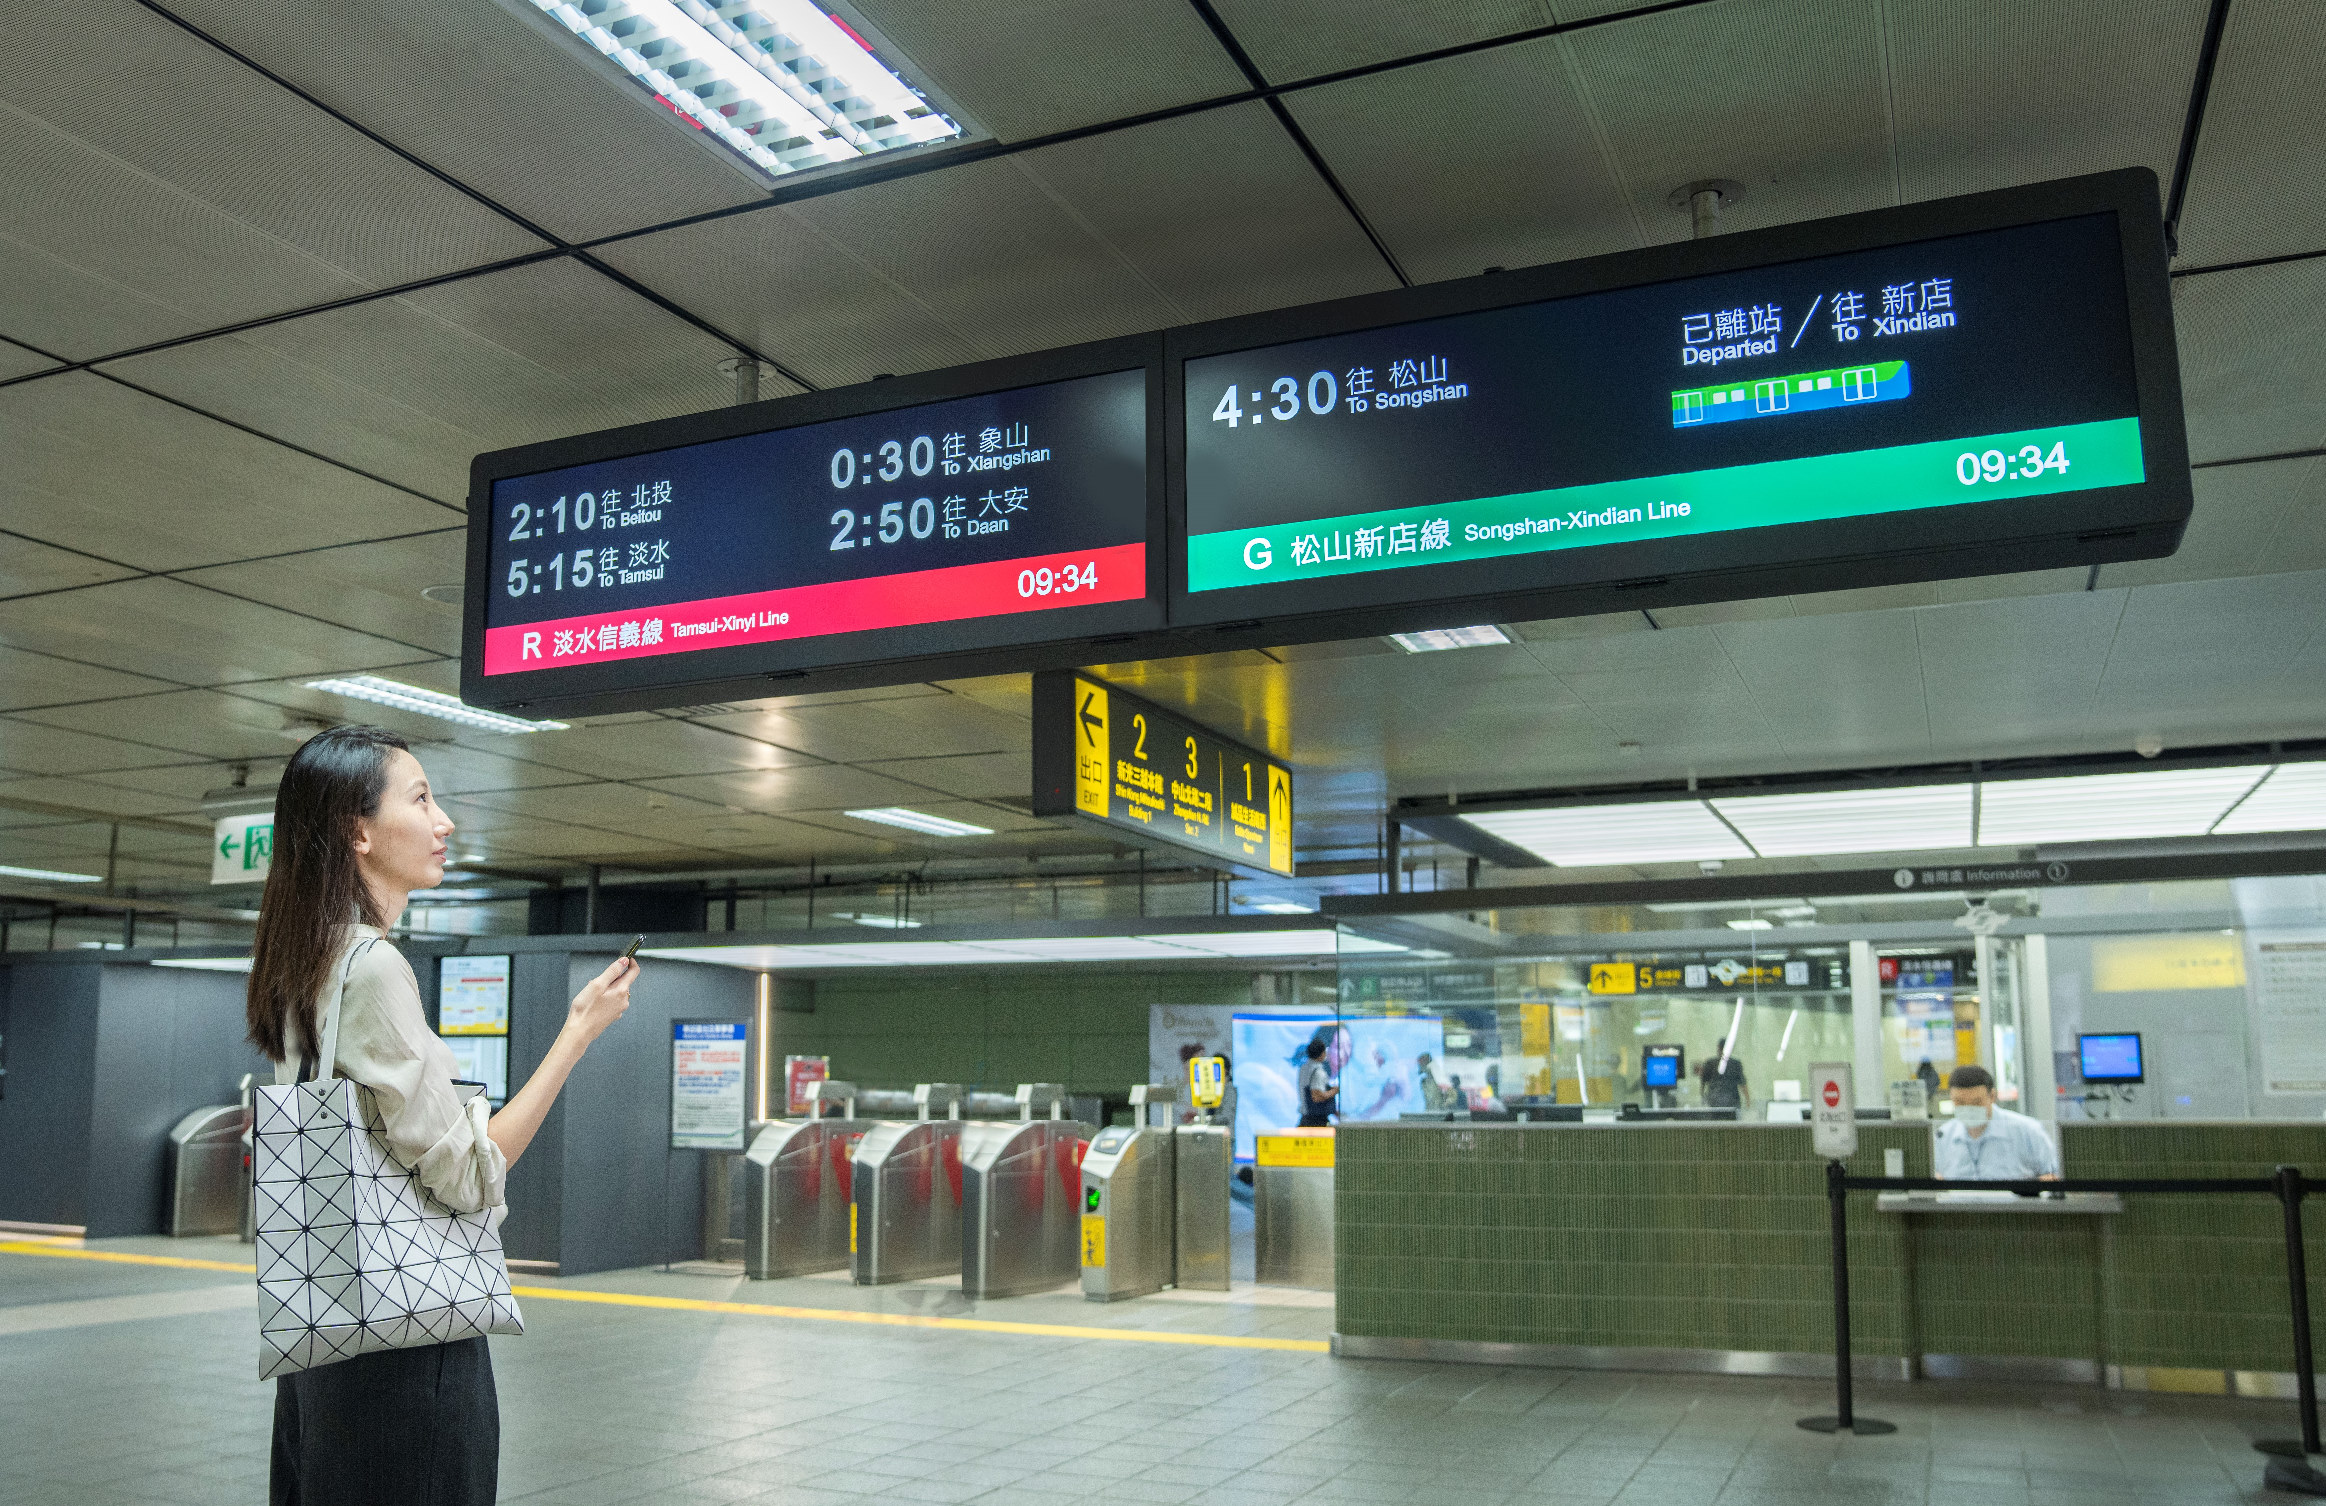 【台北捷运】TARTAN独特长条型比例显示器 打造都会智能车站新风貌